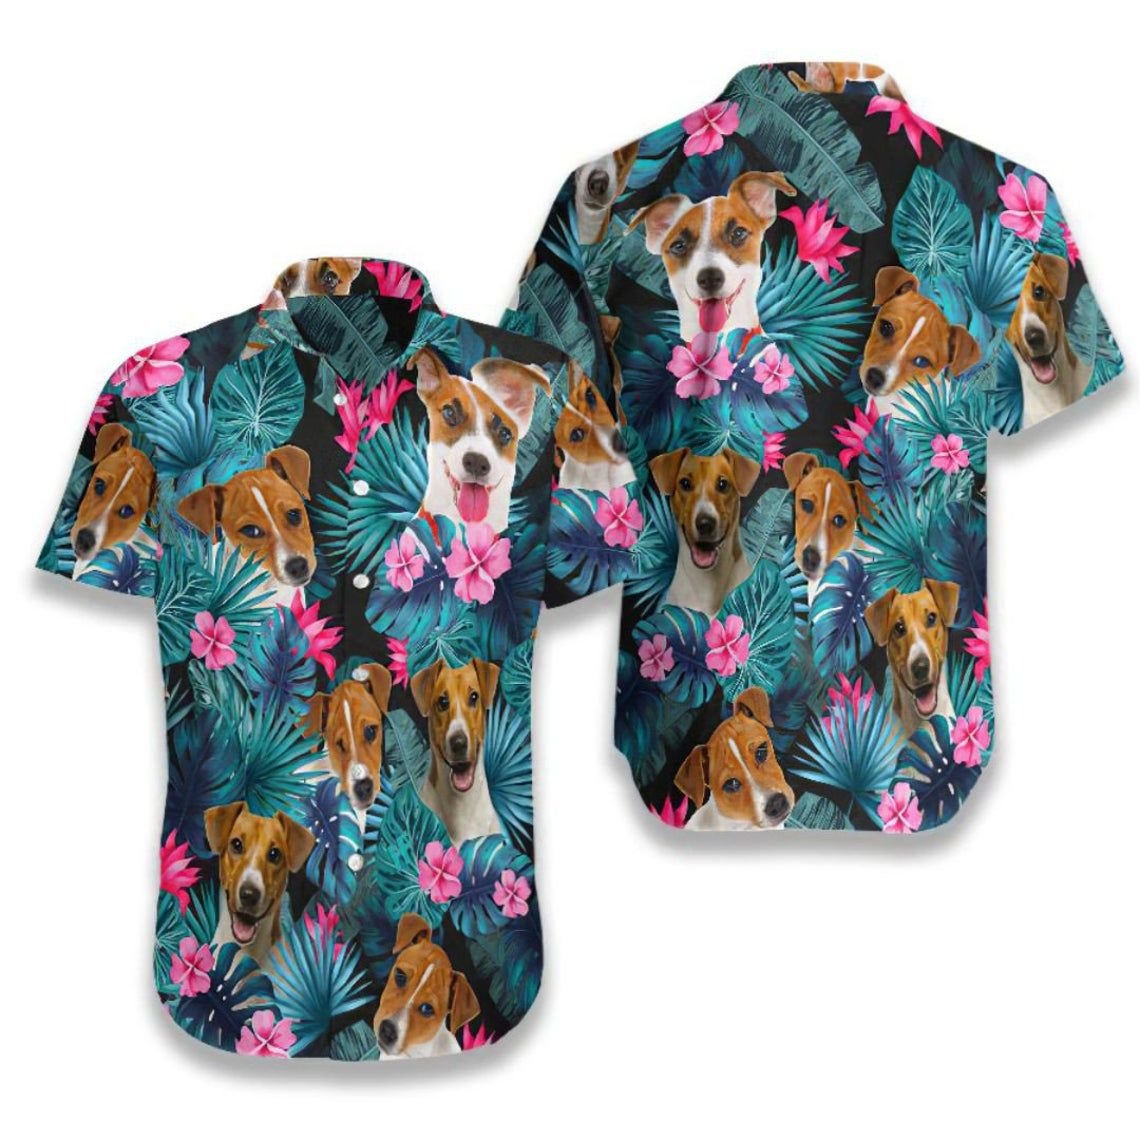 Tropical Jack Russell Terrier Hawaiian Shirt, Fullprint Button Shirt Style: Short Sleeve Hawaiian Shirt, Color: Black